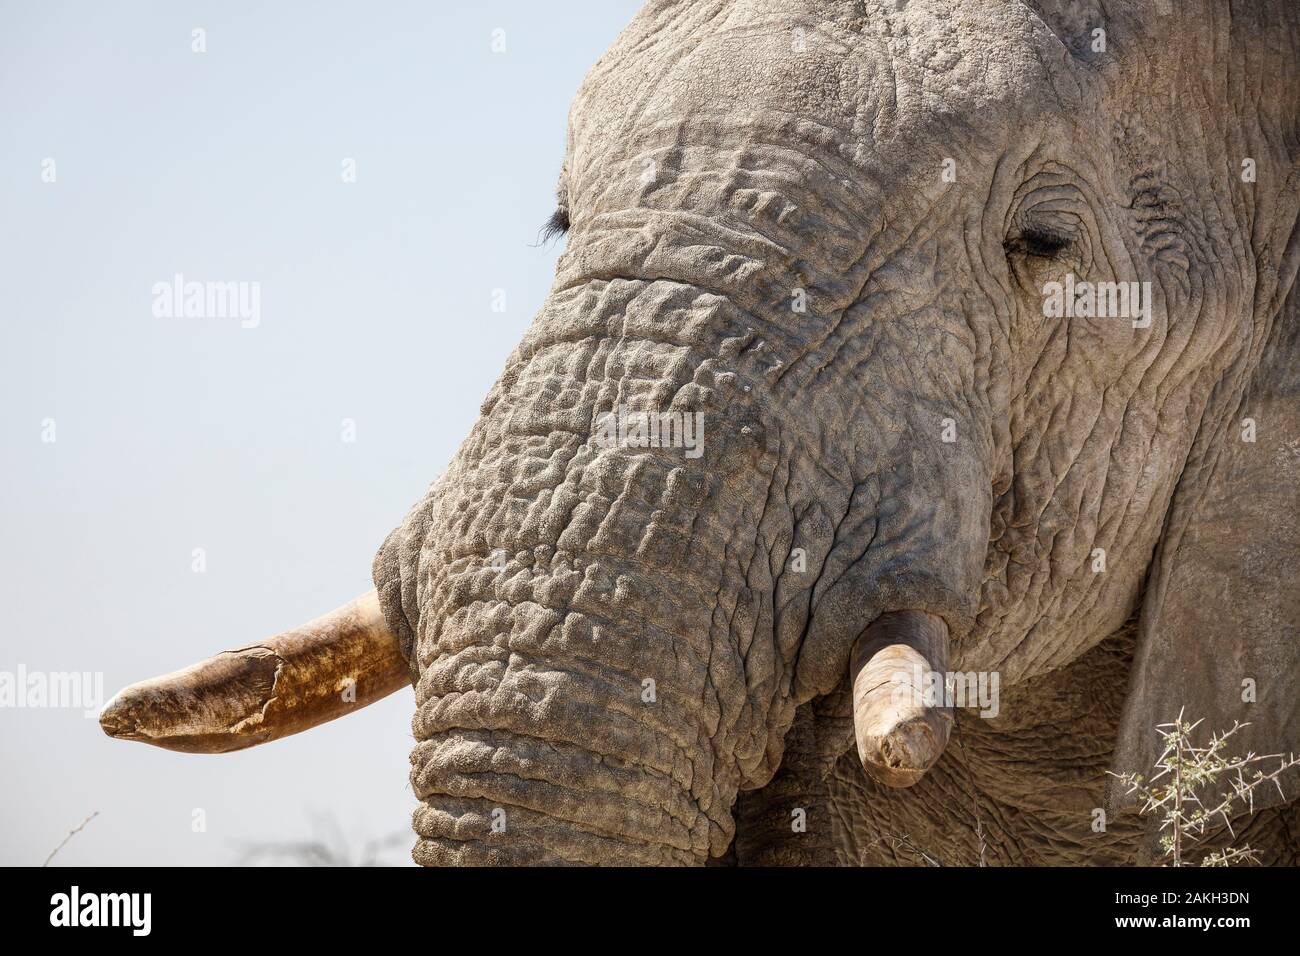 Namibia, Oshikoto province, Etosha National Park, african bush elephant (Loxodonta africana) Stock Photo